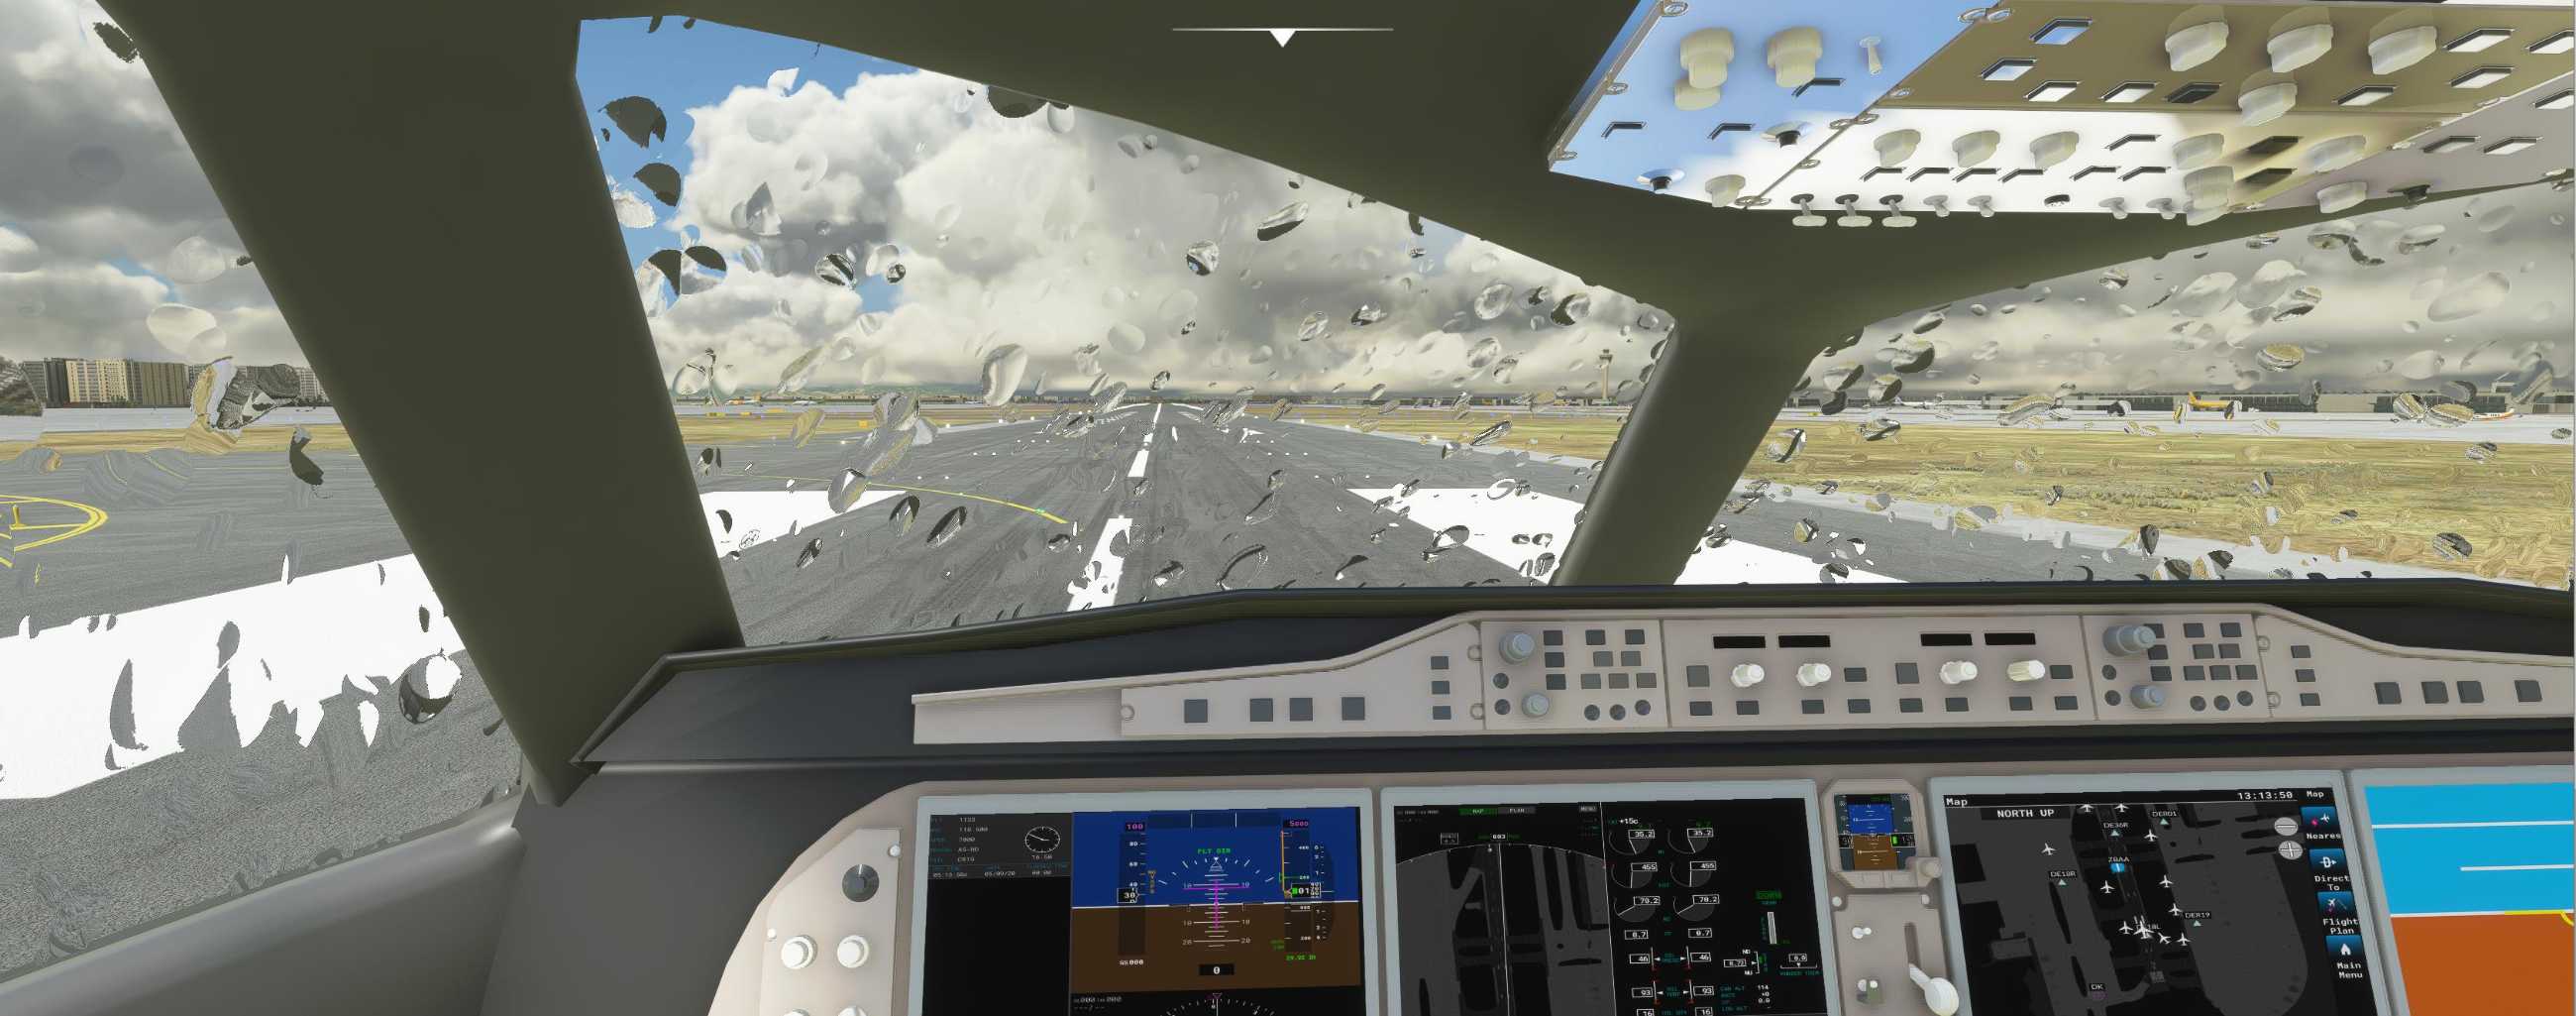 FYCYC-C919 国产大飞机机模 微软模拟飞行演示-4239 